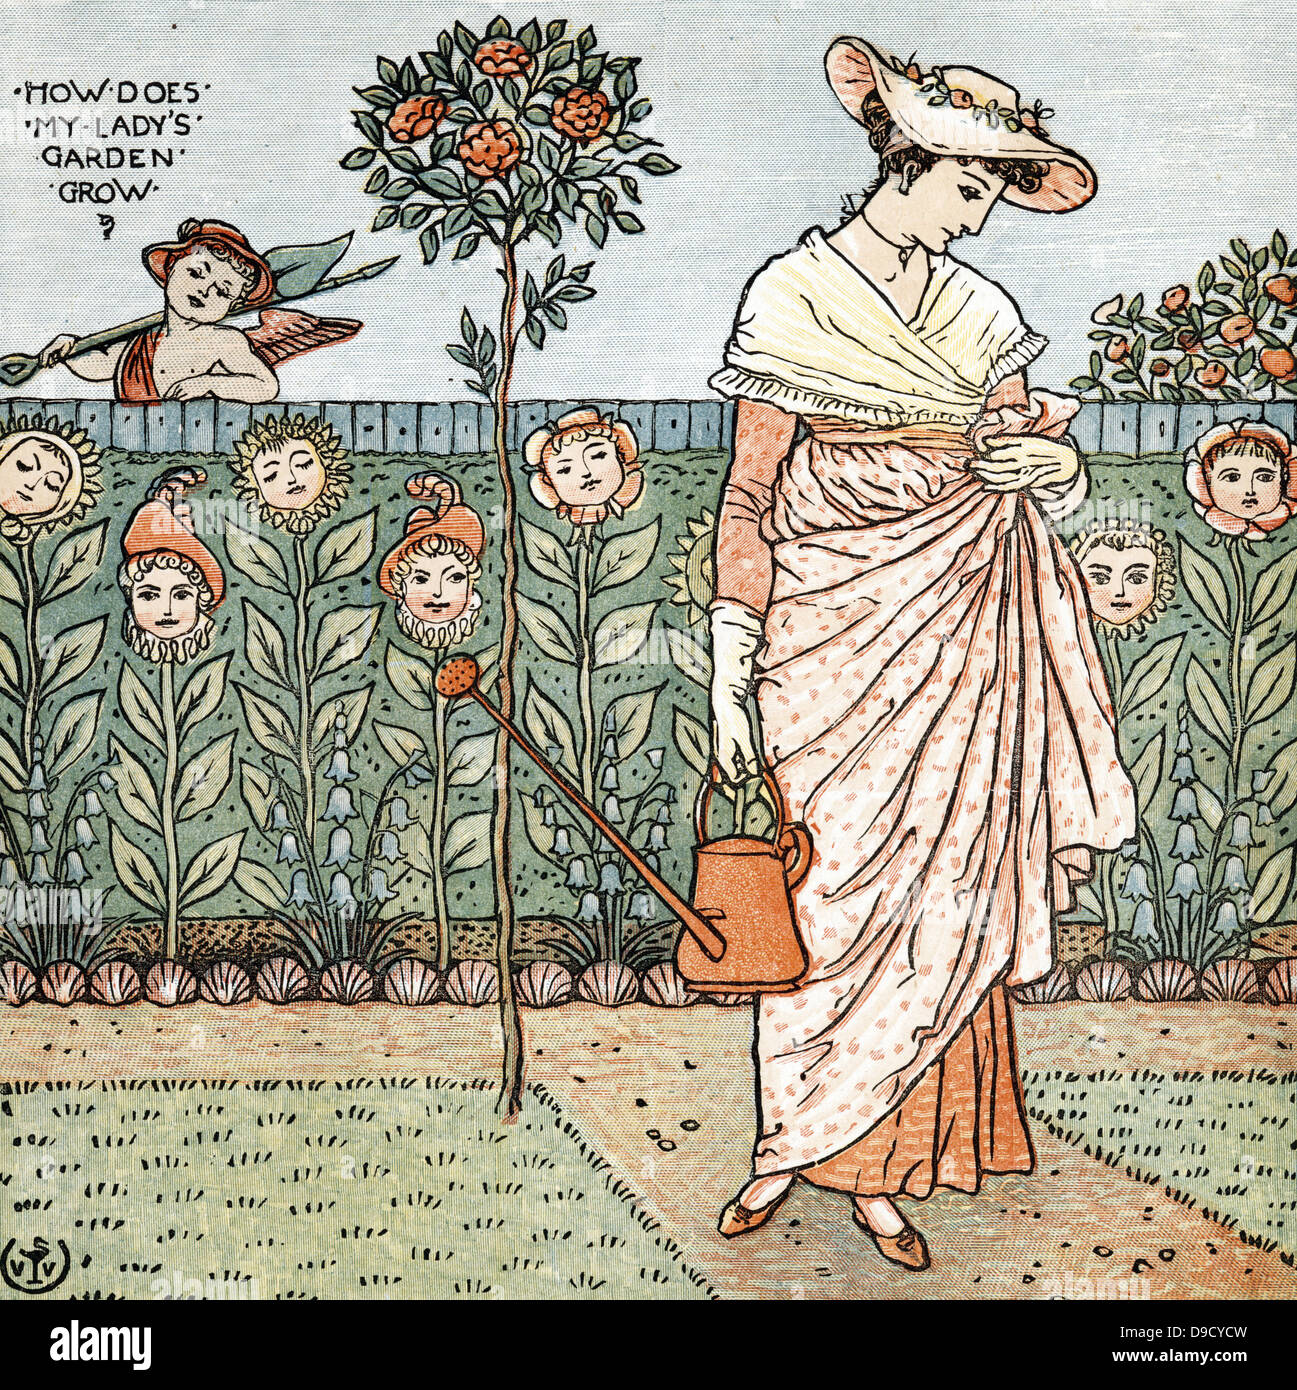 Wie wachsen meine Ladys Garten?.  Illustration von Walter Crane (1845-1915) für das Kinderlied. Farbe gedruckt Holzstich. Stockfoto